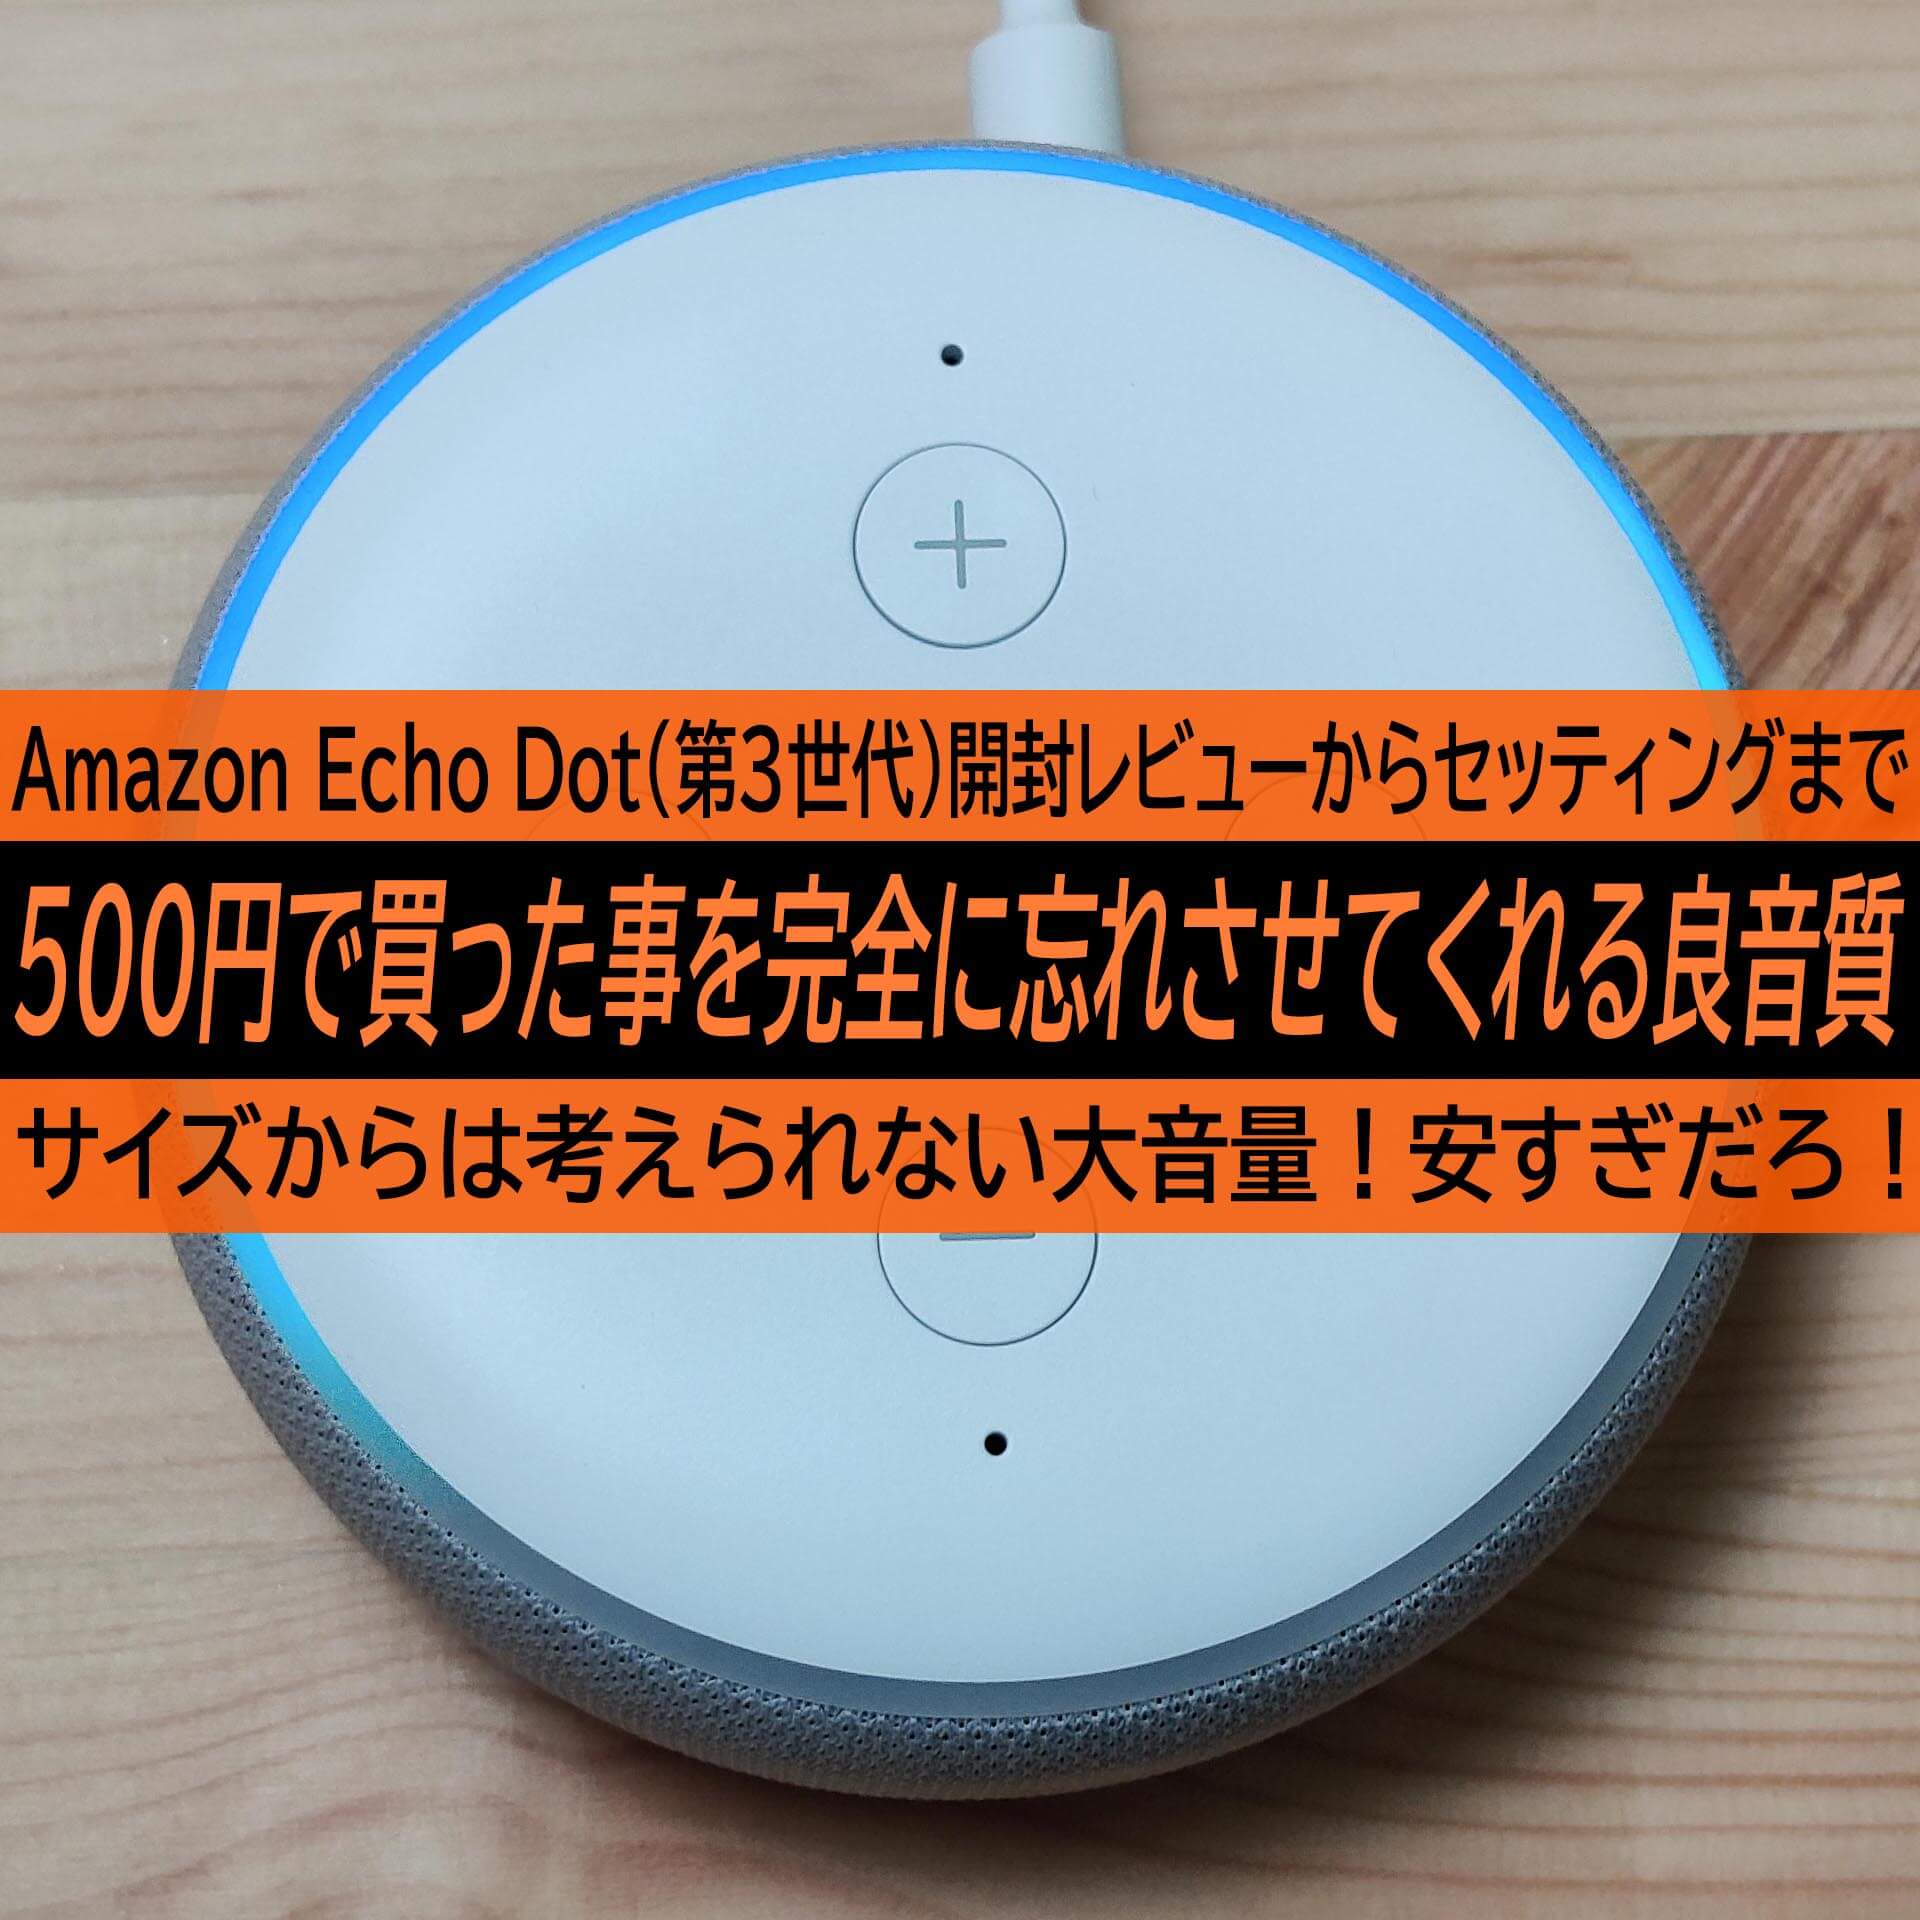 Amazon Echo Dot 第3世代 開封レビューからセッティングまで 500円で買った事を完全に忘れさせてくれる音 ハイパーガジェット通信